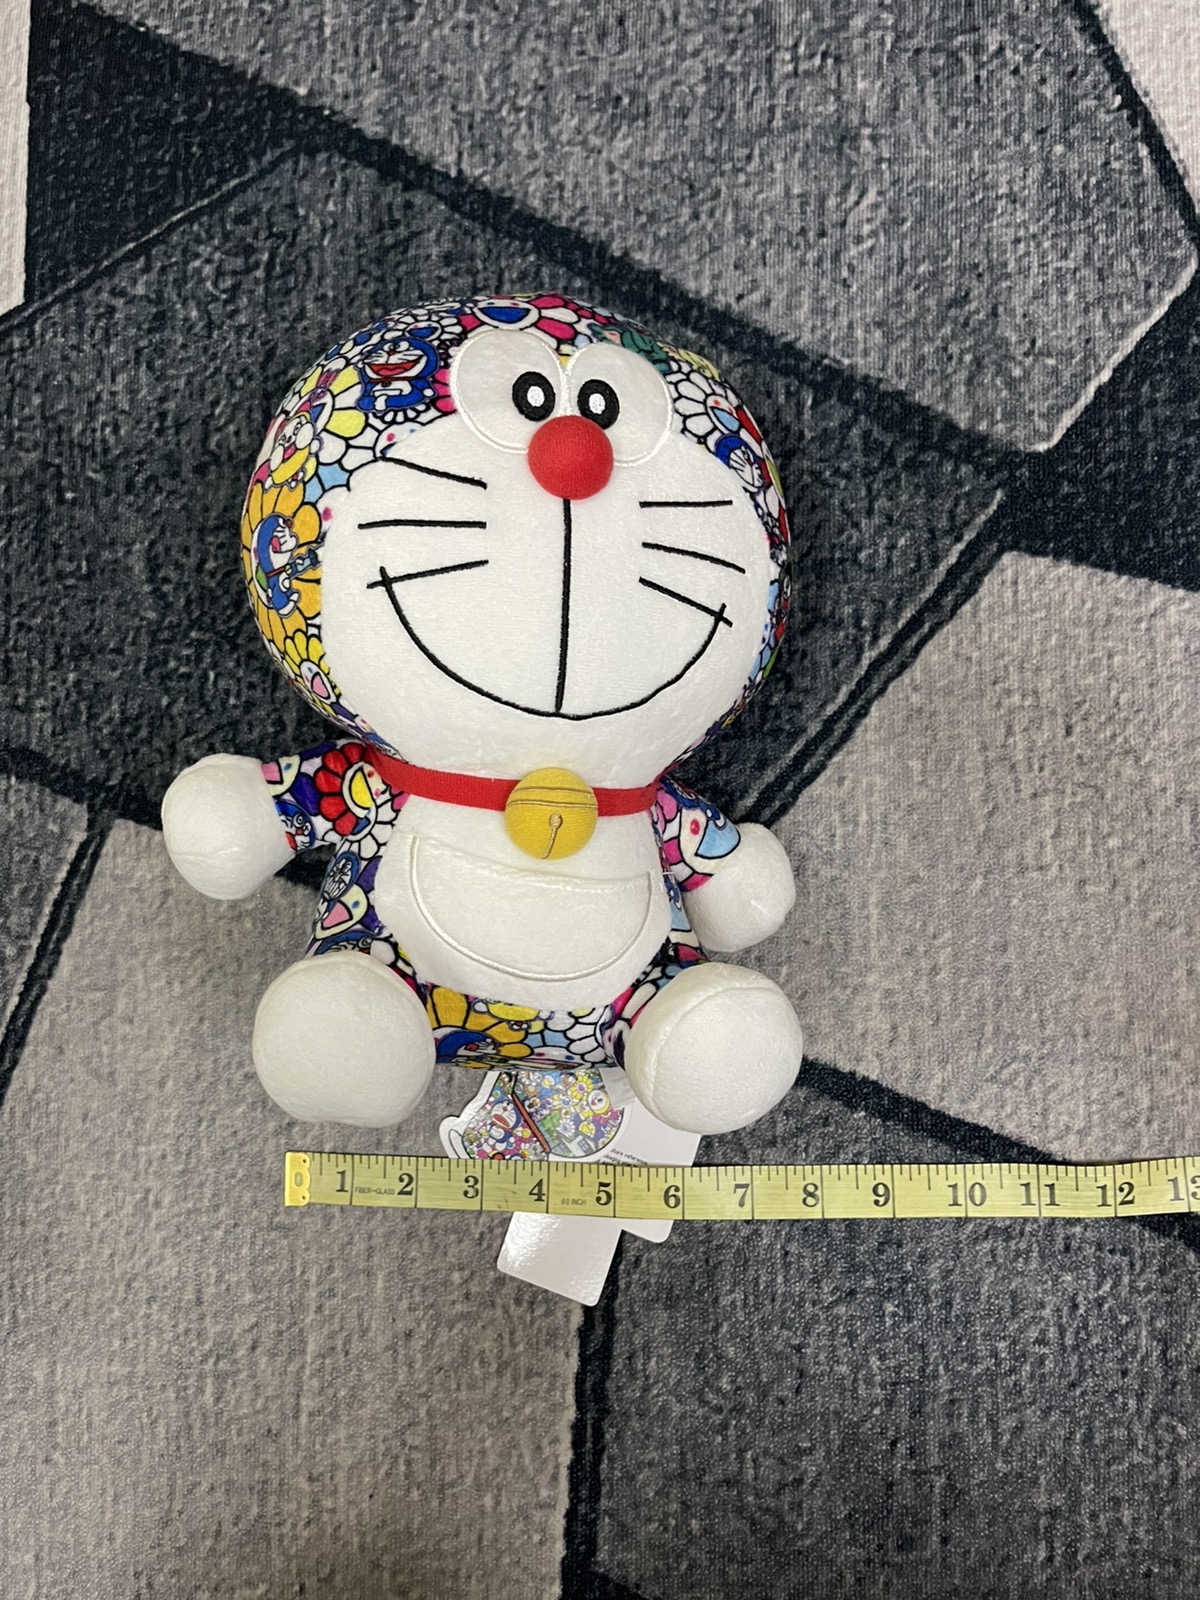 Uniqlo - New Takashi Murakami Doraemon Toys Limited Edition - 4